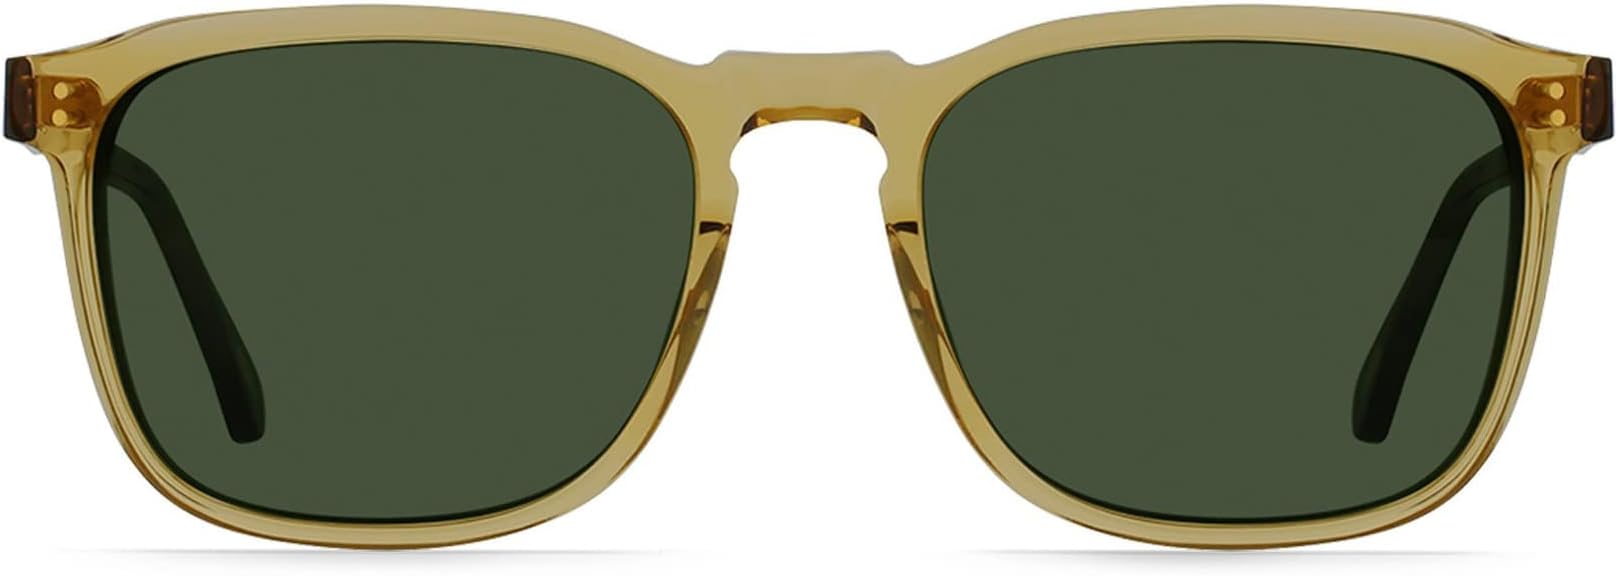 цена Солнцезащитные очки Wiley 54 RAEN Optics, цвет Fennel/Sage